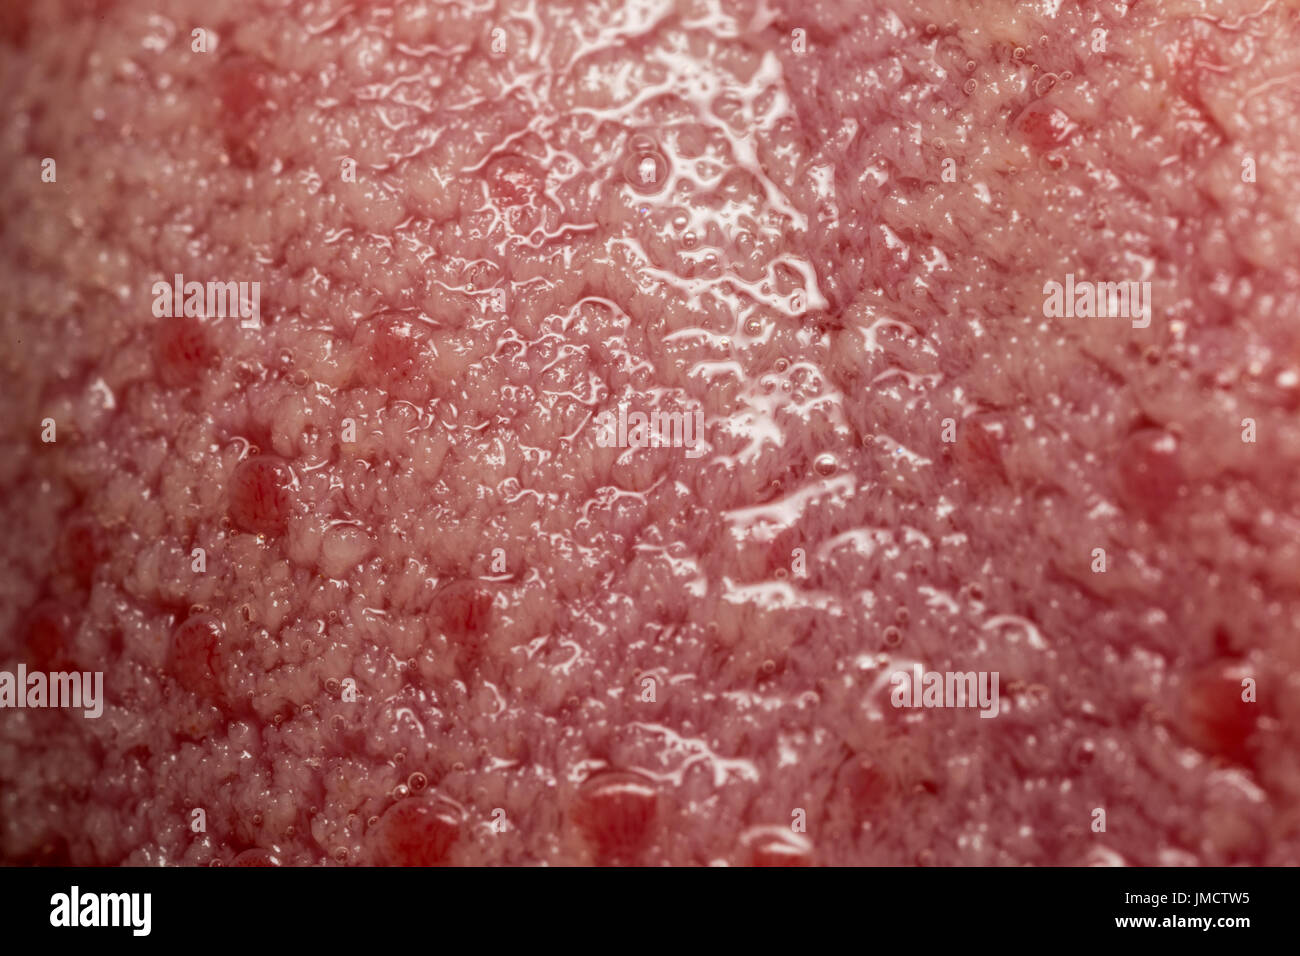 Makro Foto von Geschmacksknospen auf der Zunge Stockfoto